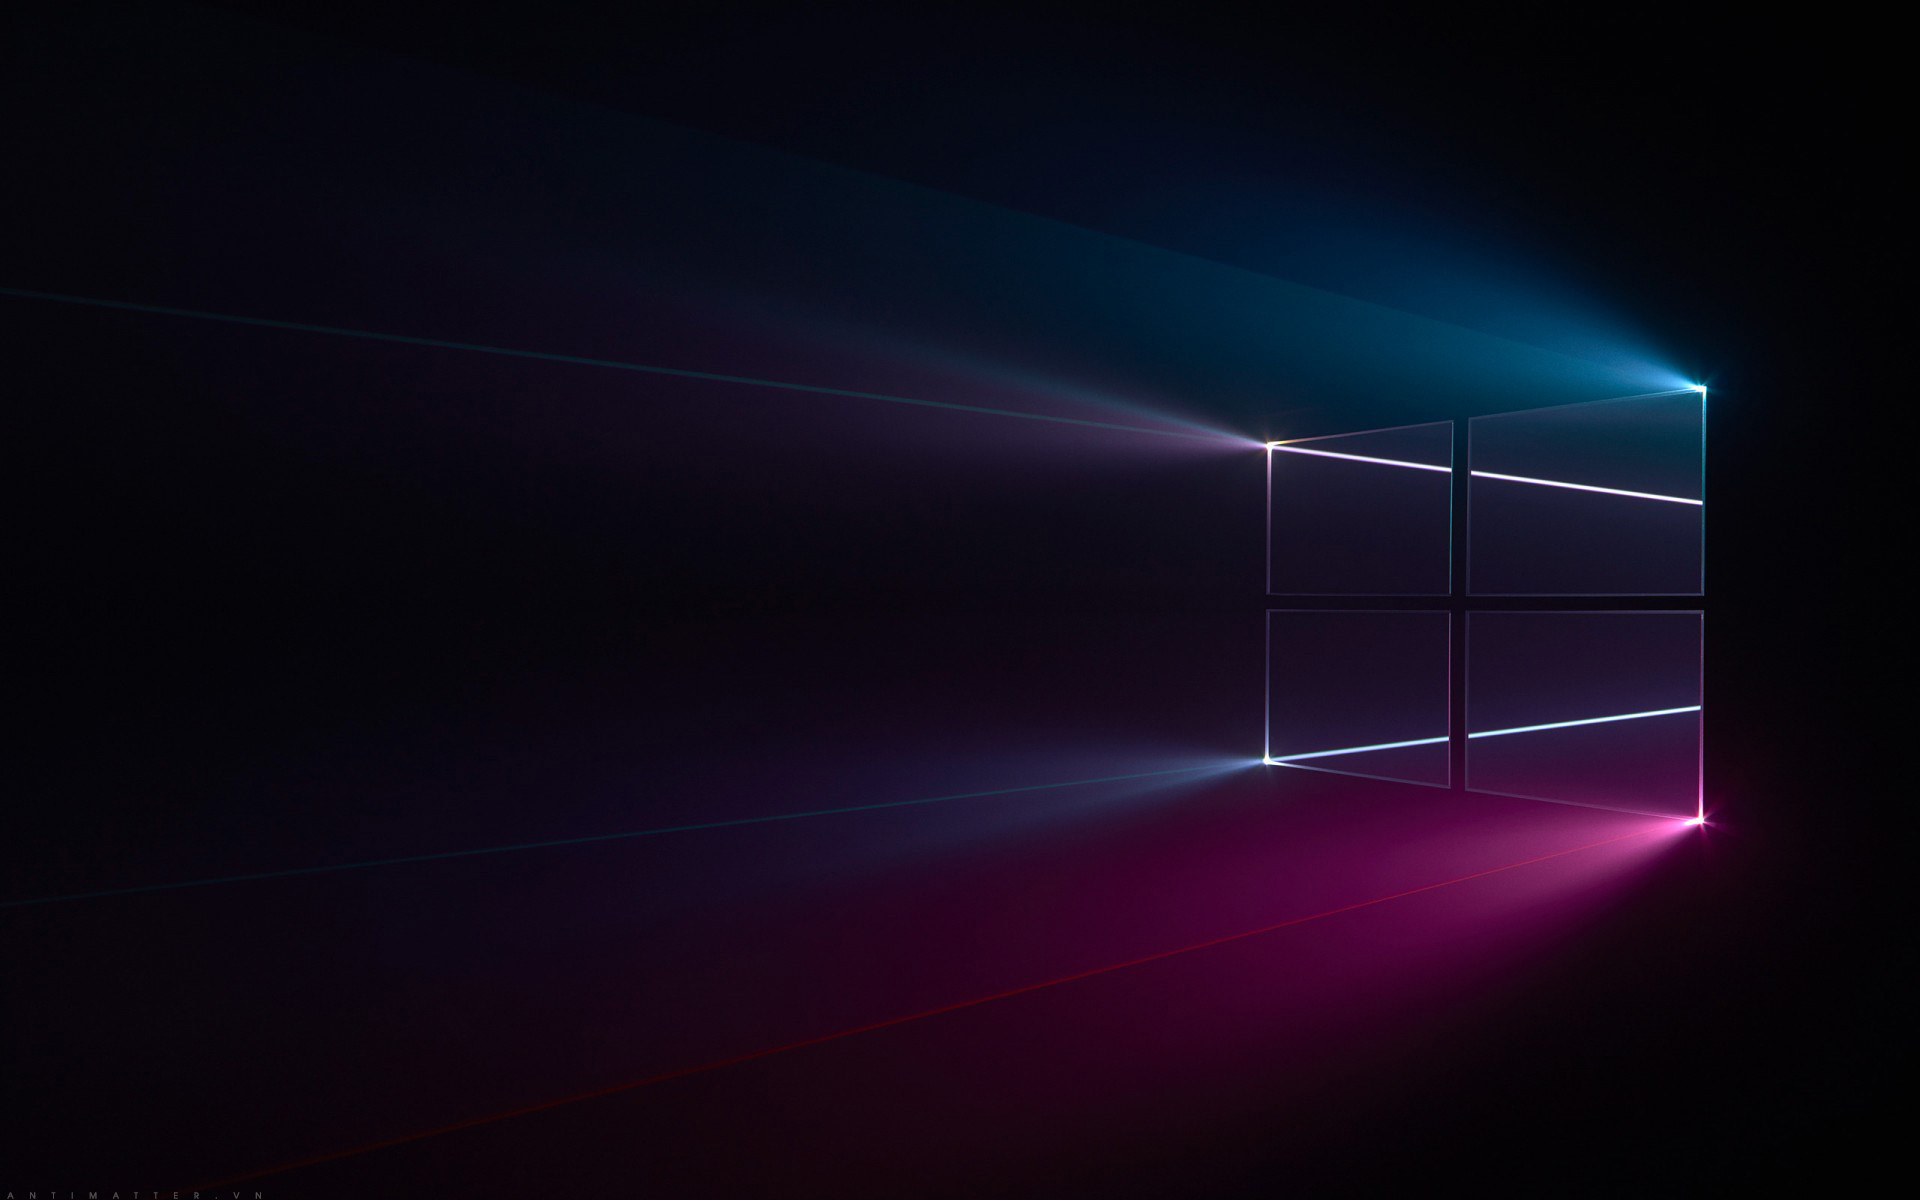 Hướng Dẫn Cách Trang Trí Màn Hình Desktop Đẹp Mắt cho Windows 10 - YouTube